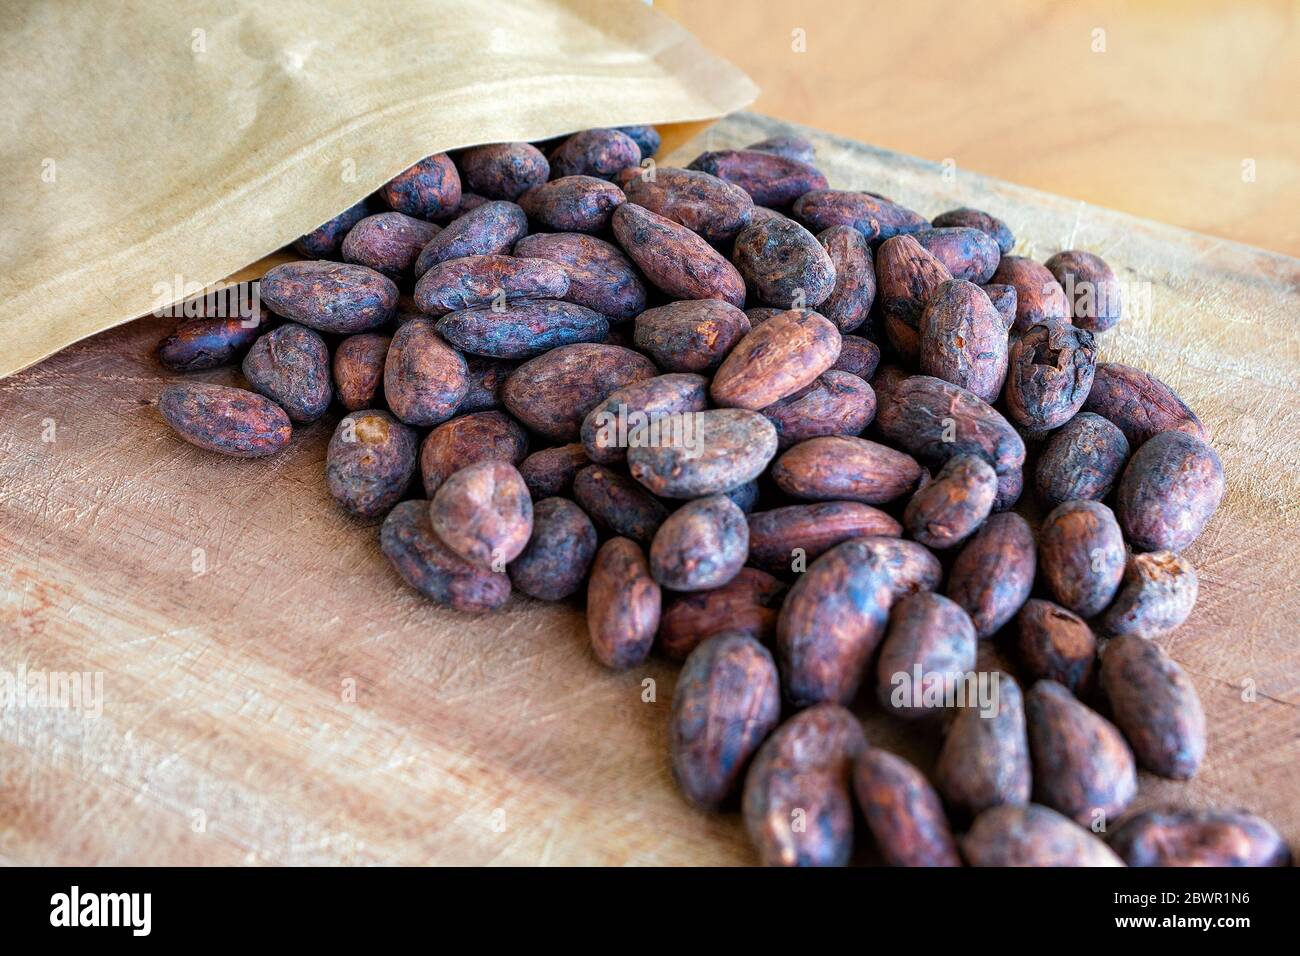 Geröstete Kakaobohnen, die auf einem Holzhintergrund aus der Verpackung verschüttet wurden. Stockfoto